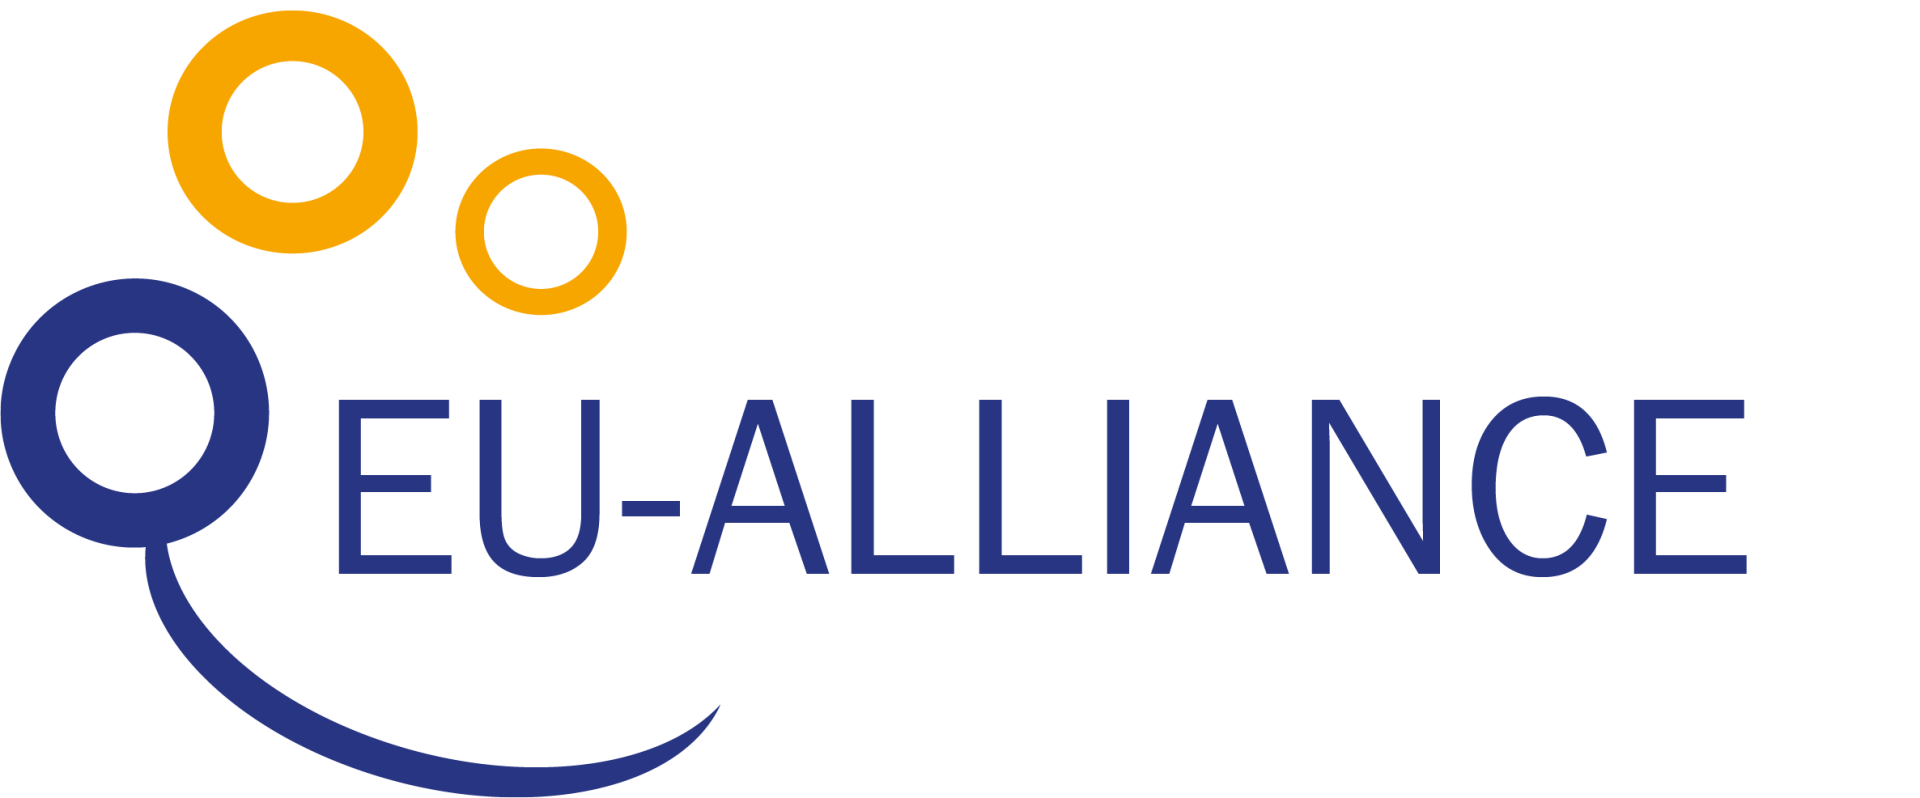 EU-ALLIANCE_Logo esecutivo